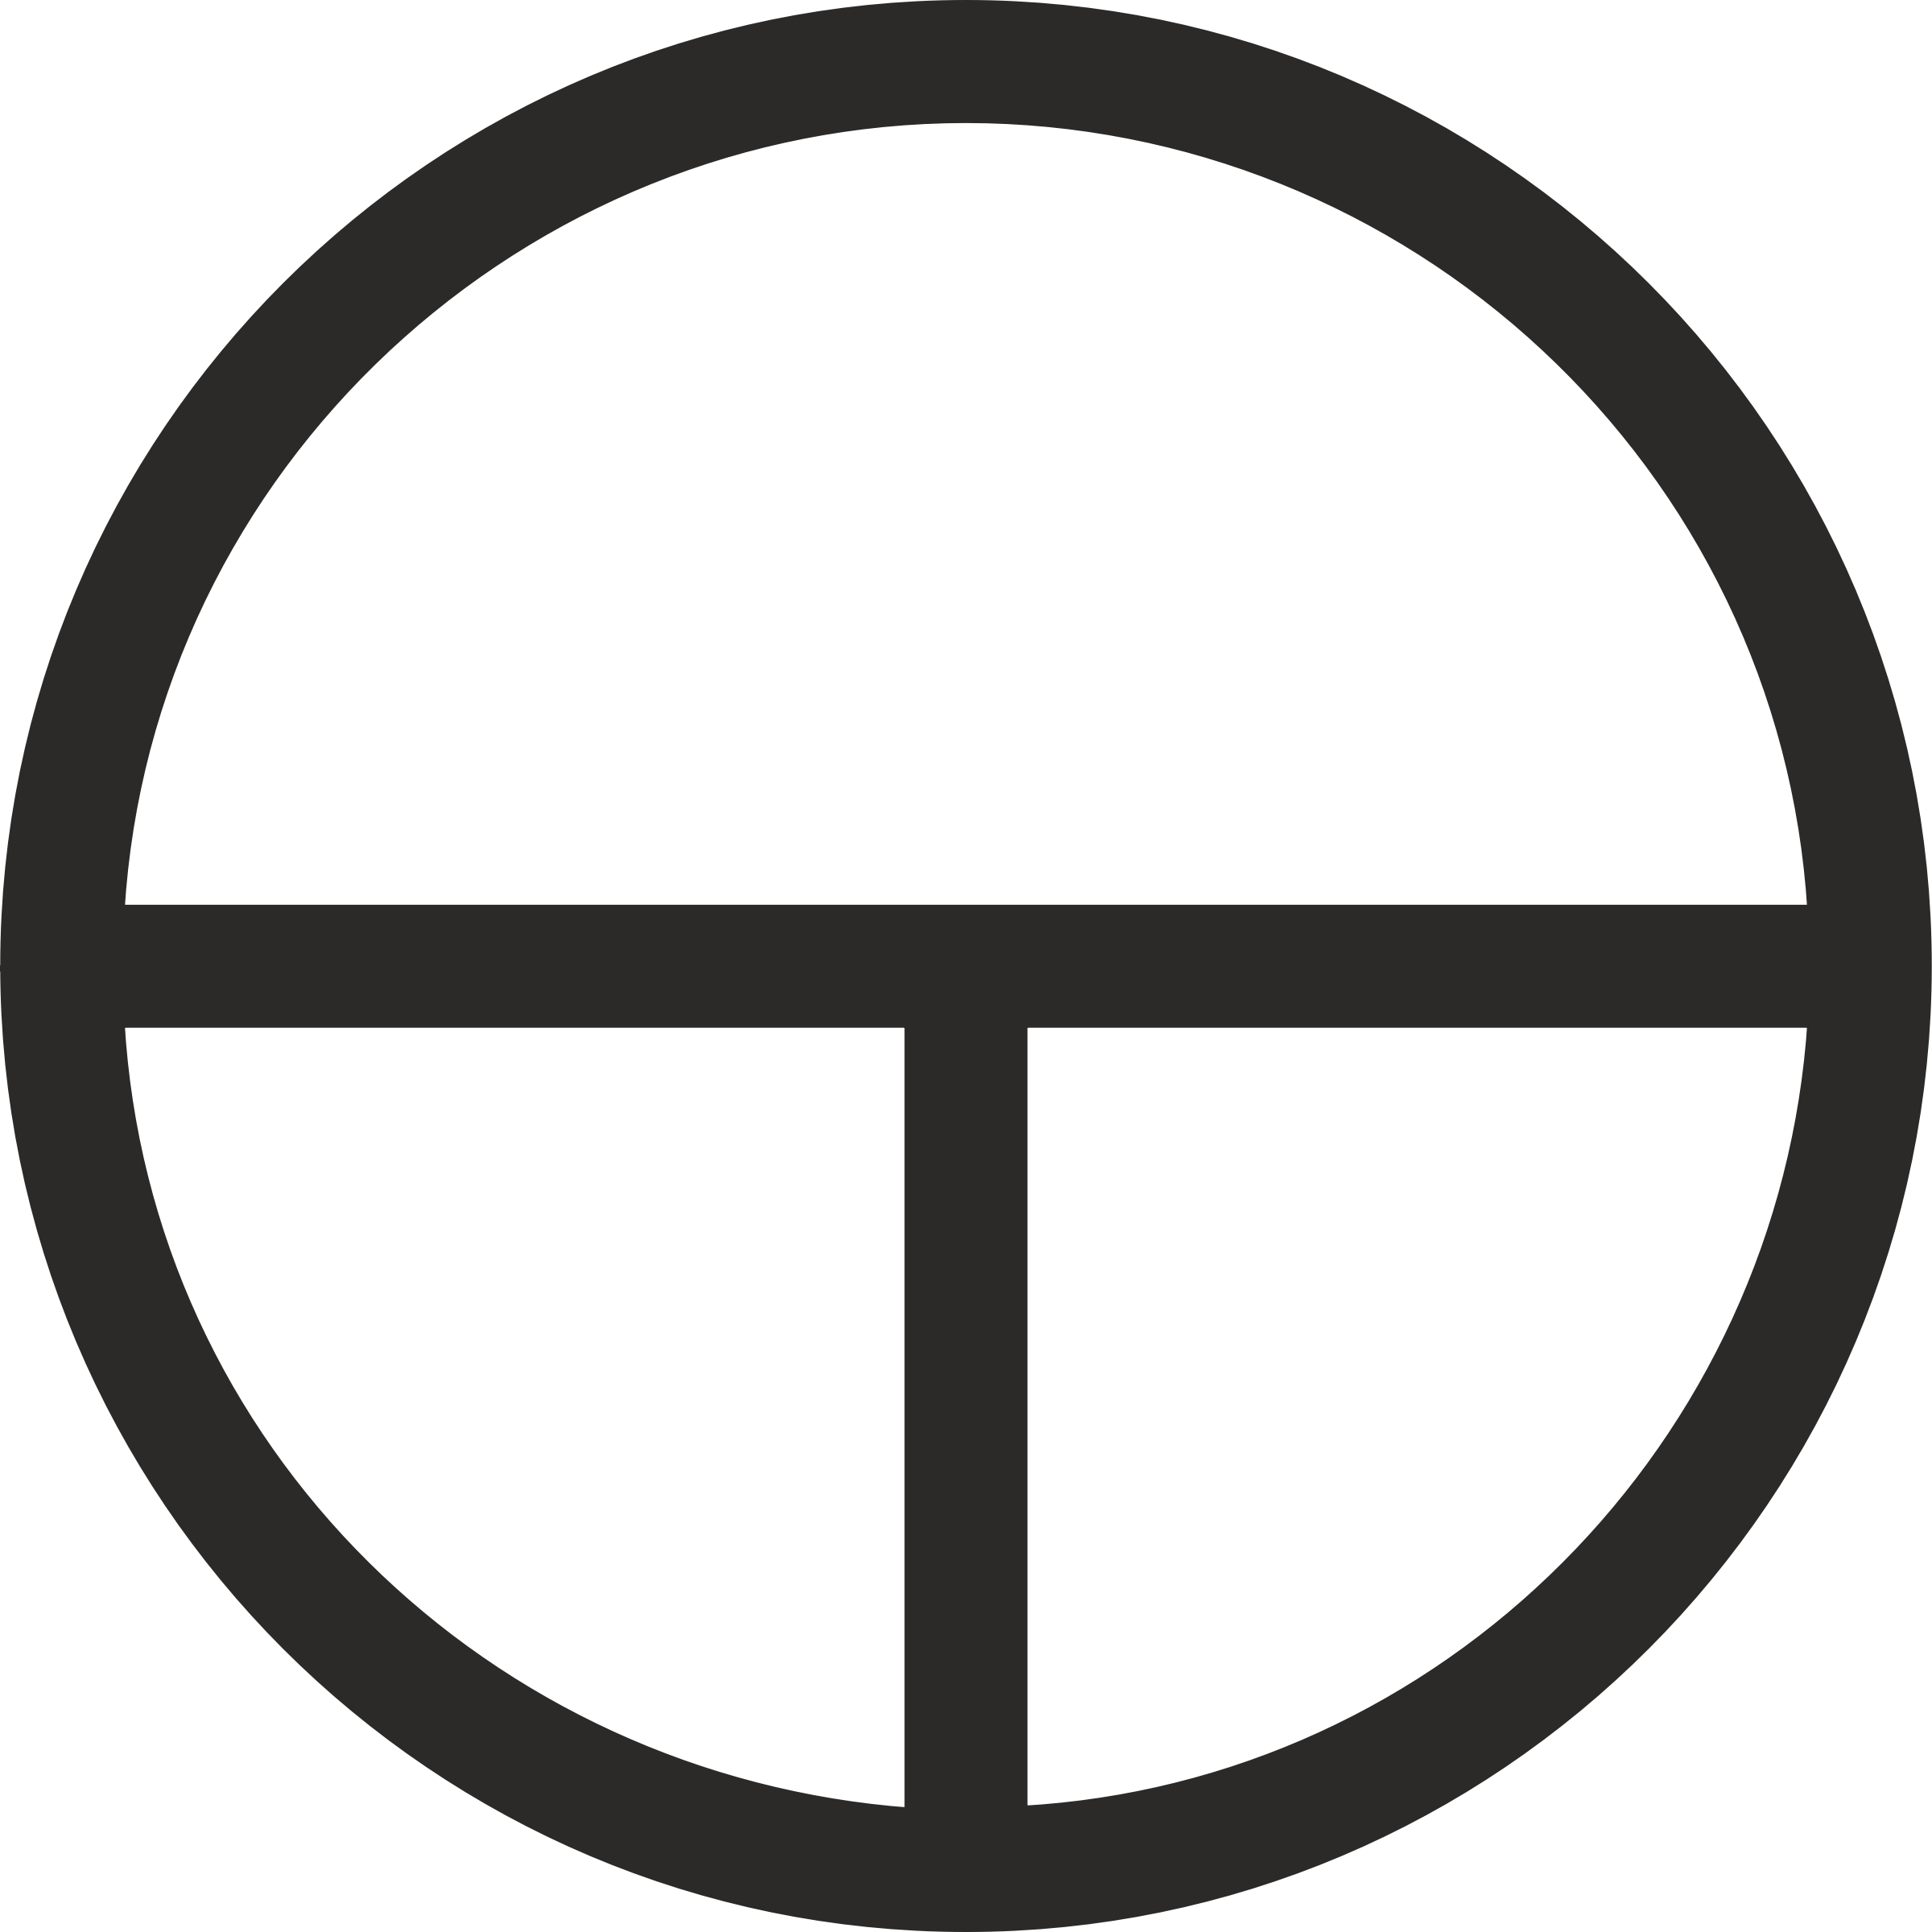 Круг символ. Круг в круге символ. Значок кружок. Знак кружок с крестиком. Круг скопировать символ